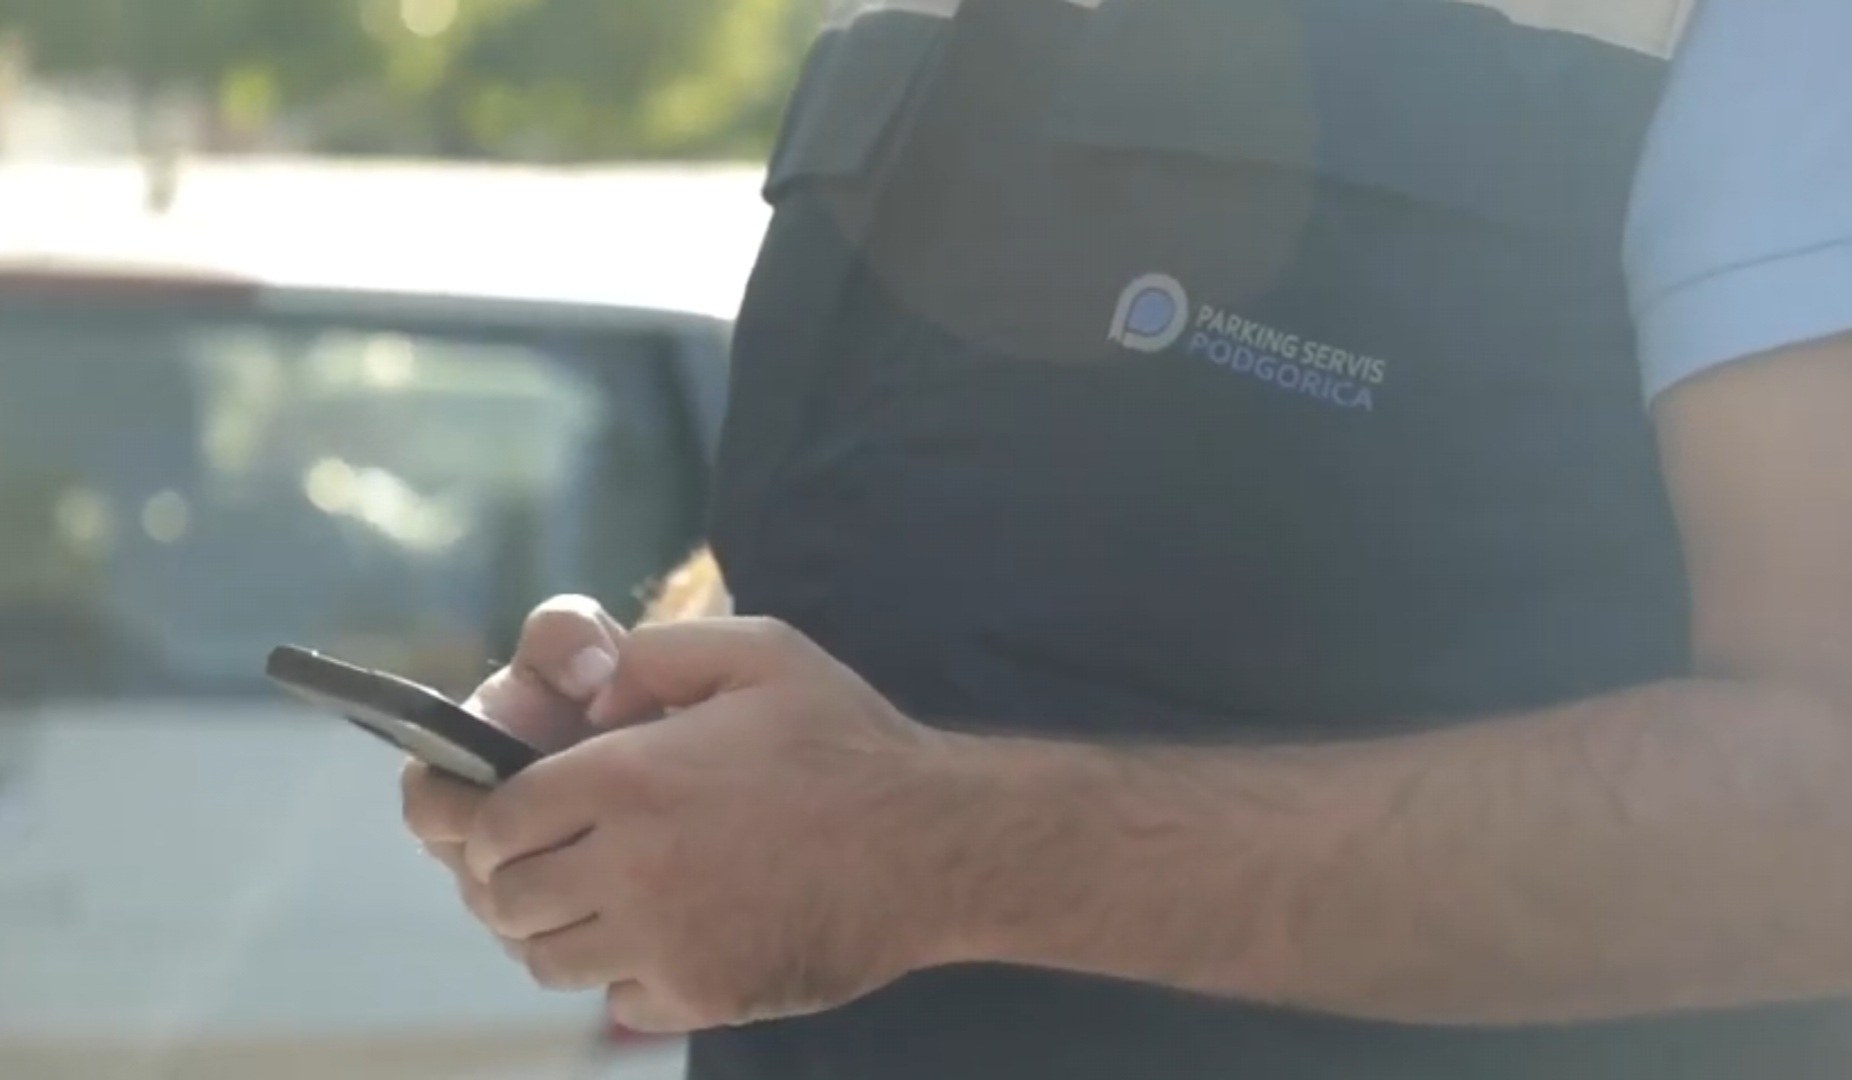 Kroz mobilnu aplikaciju Parking servisa Podgorica brzo i lako do svih informacija